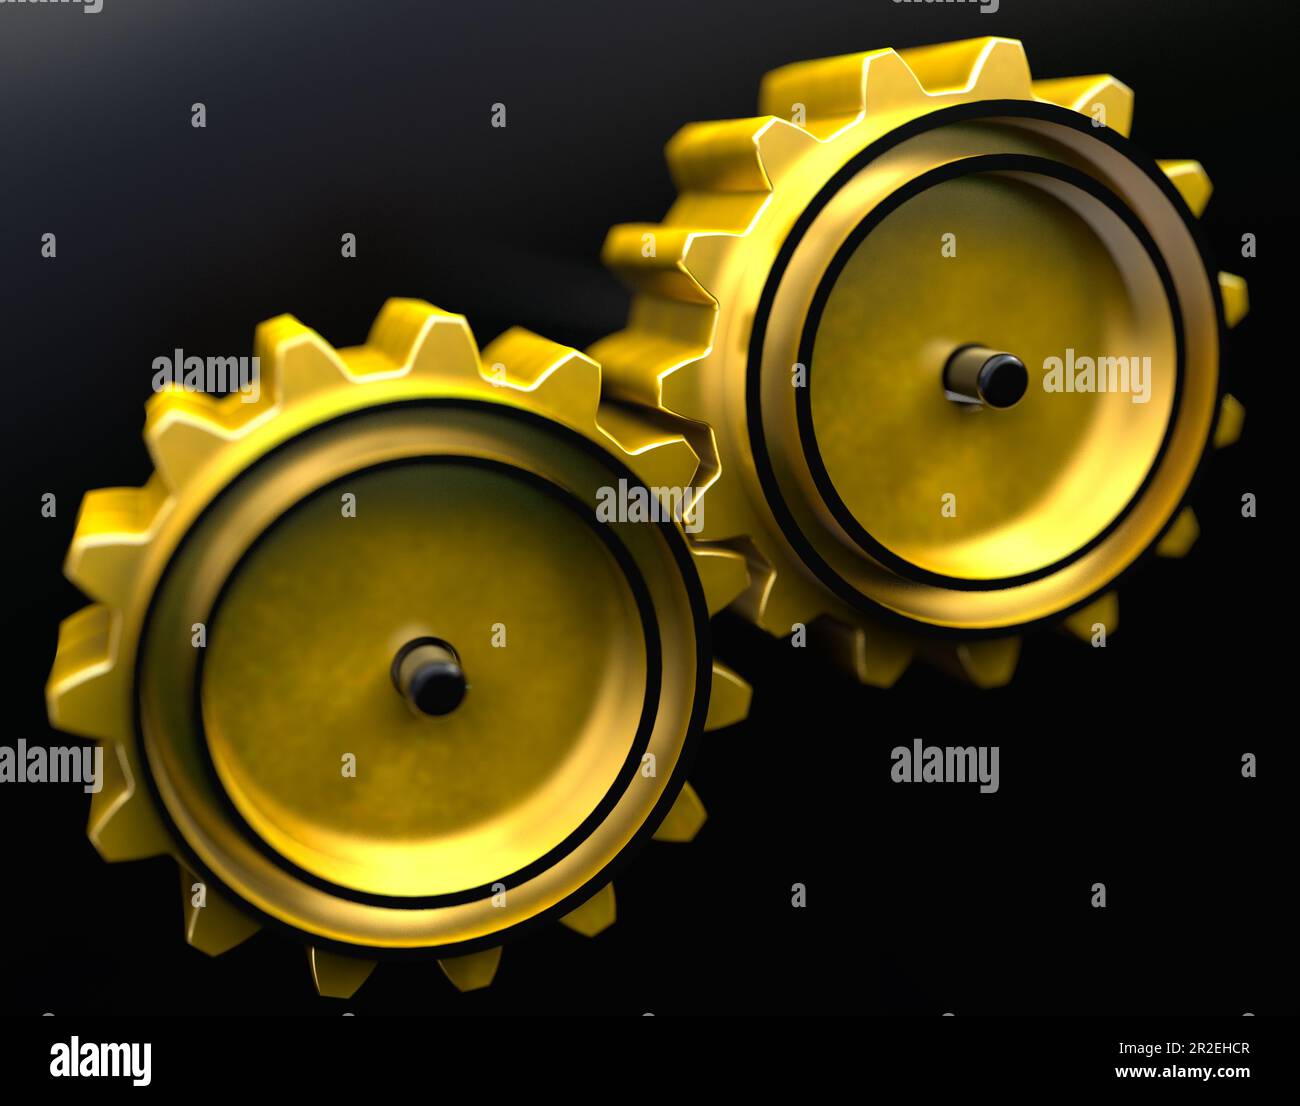 Mécanisme d'engrenage en métal d'or pour les processus d'entreprise et d'entreprise.concept d'amélioration de processus.3D illustration. Banque D'Images